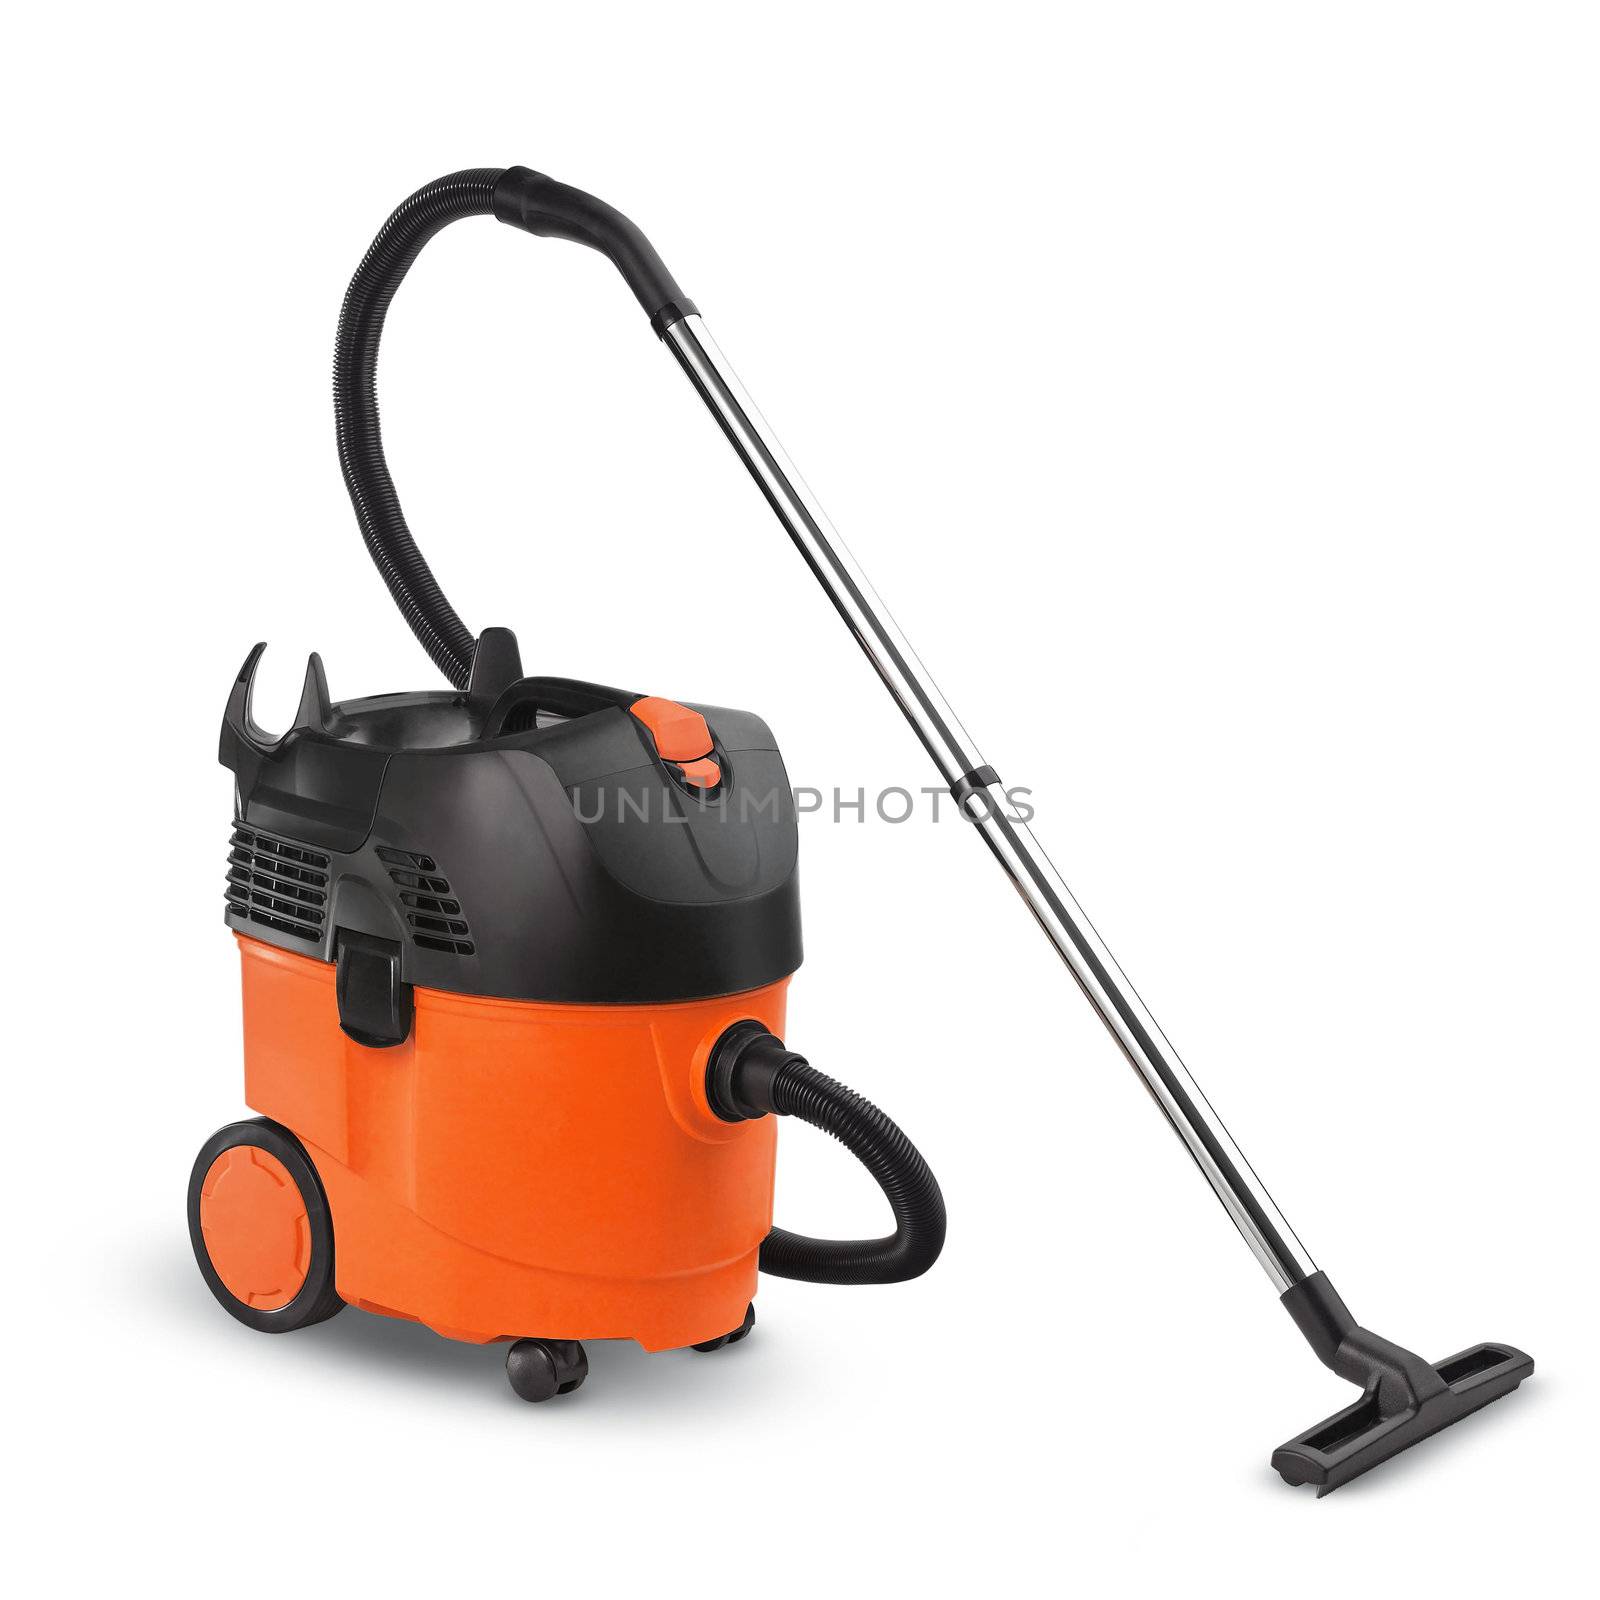 Orange Vacuum cleaner isolated on white background